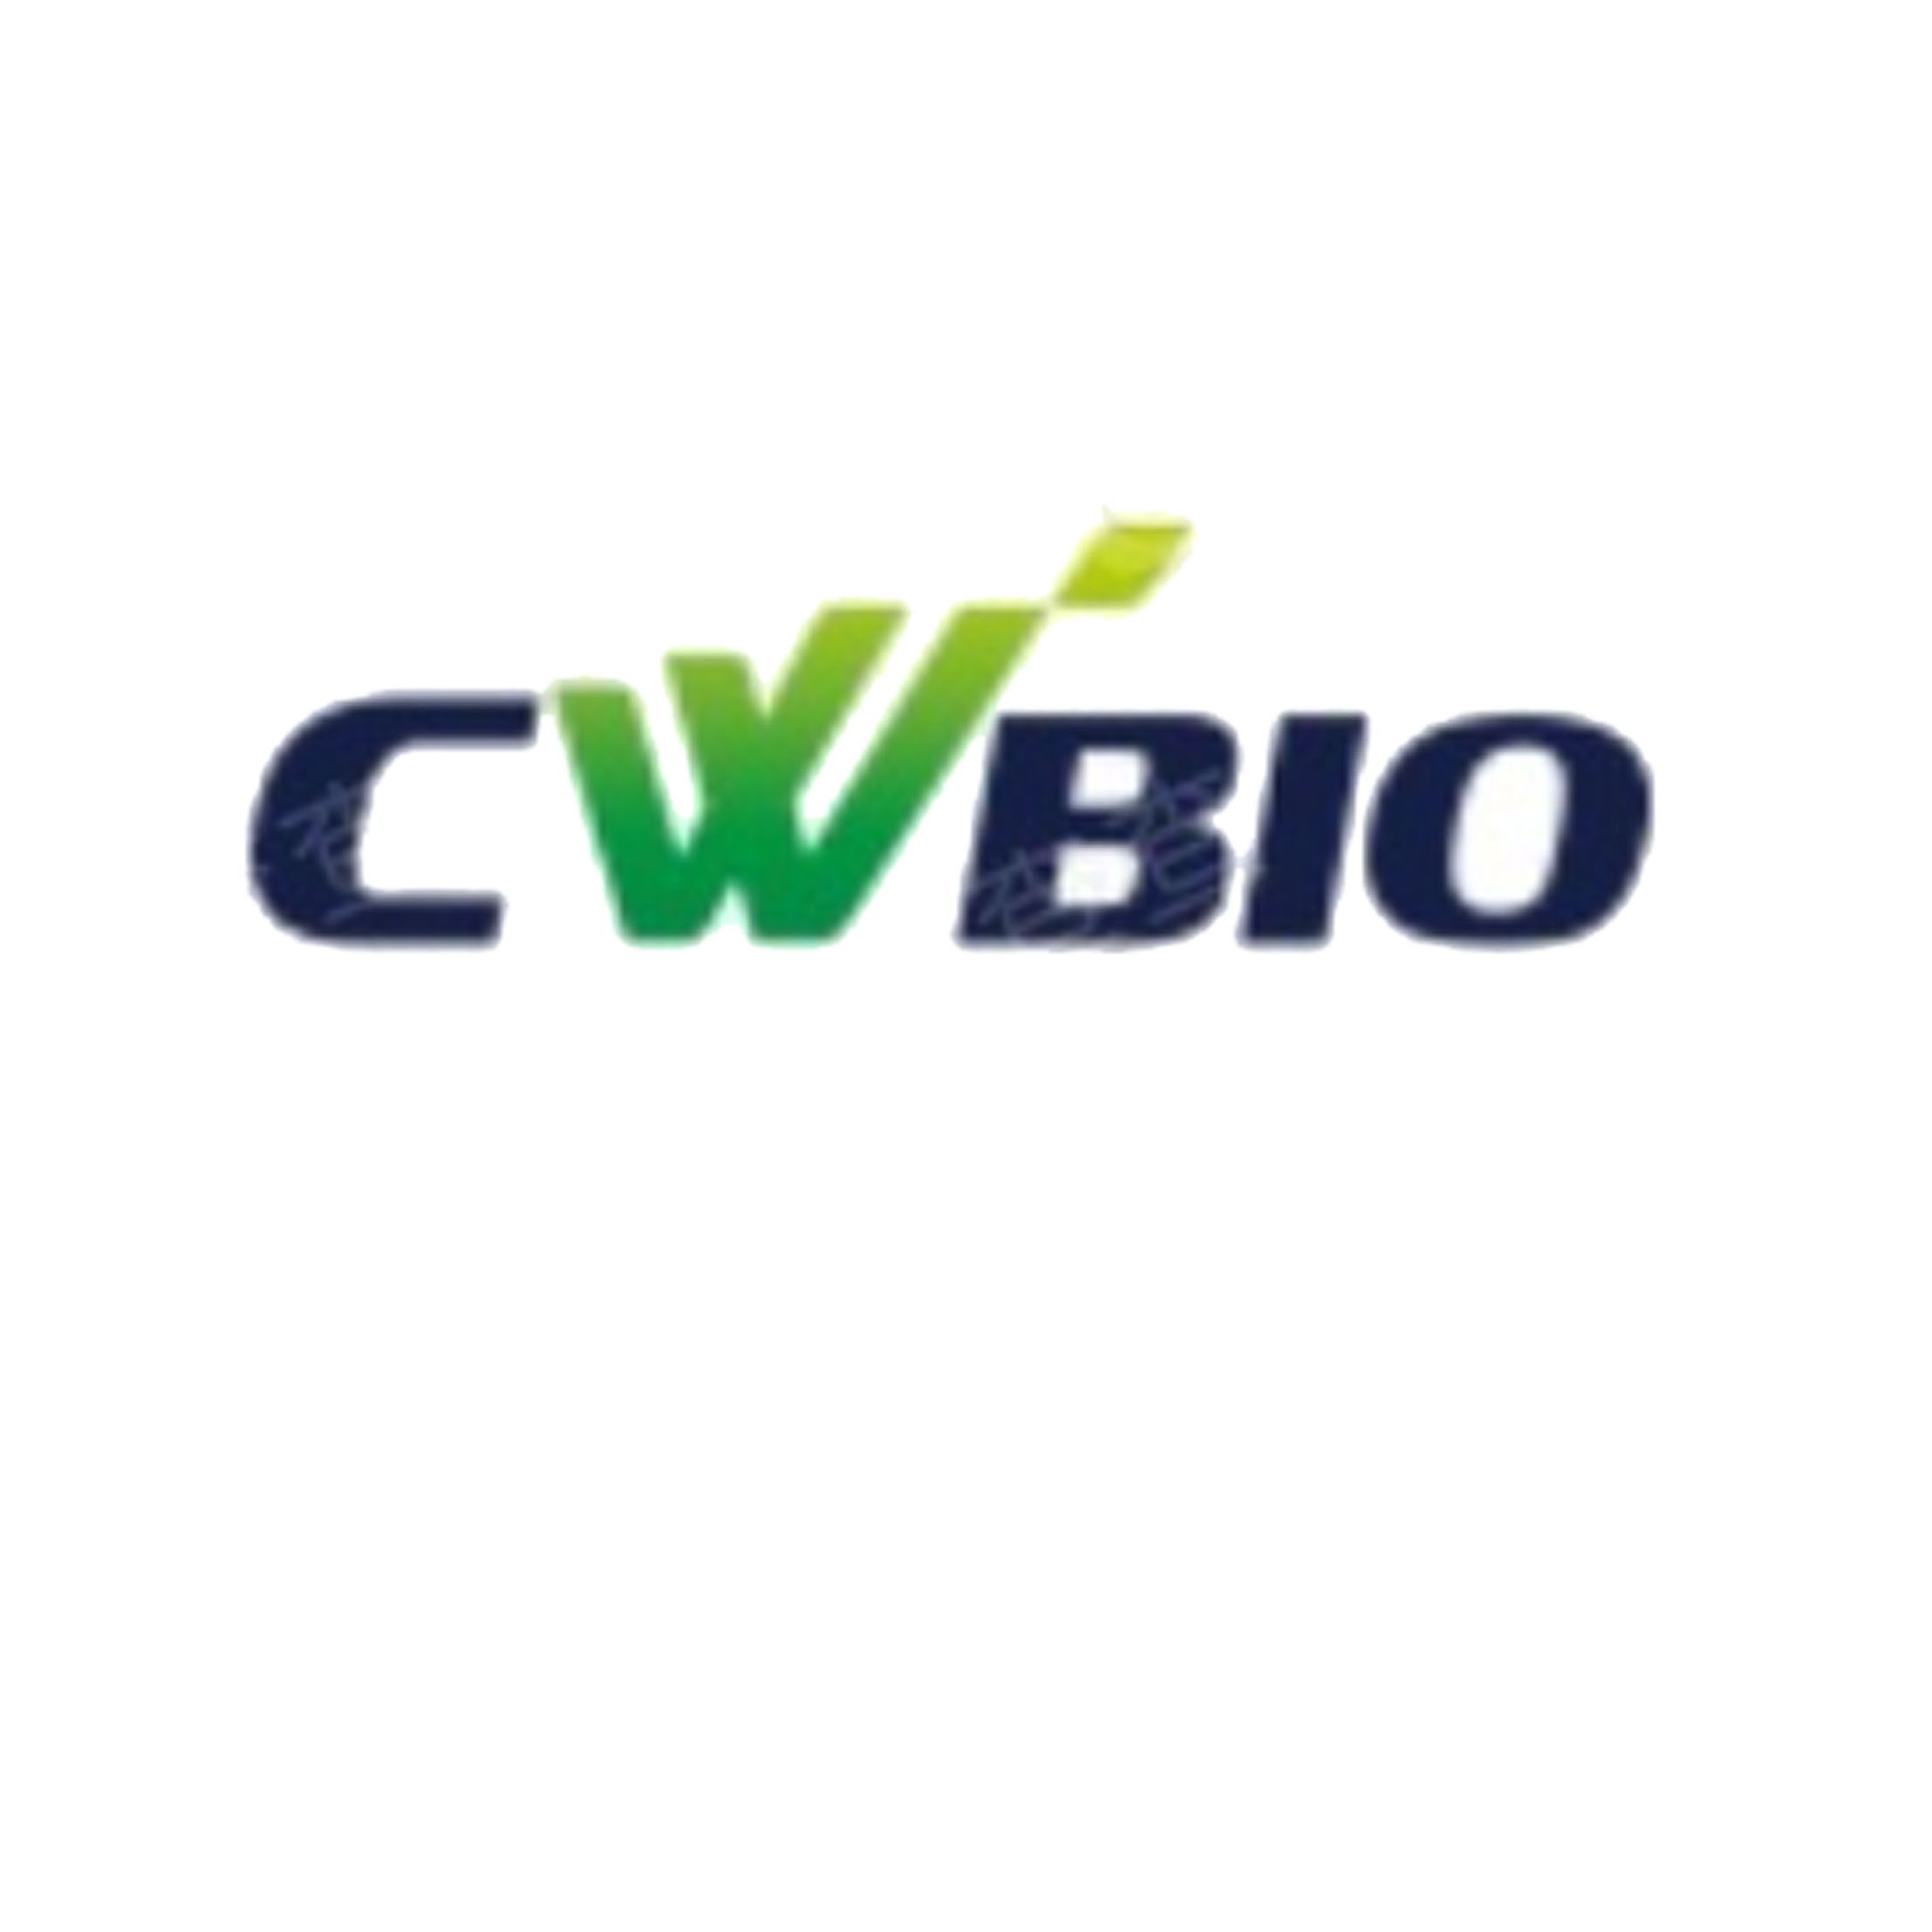 Cwbiotech核酸提取试剂盒、磁珠法核酸提取试剂盒、PCR及荧光定量PCR试剂、二代测序建库试剂